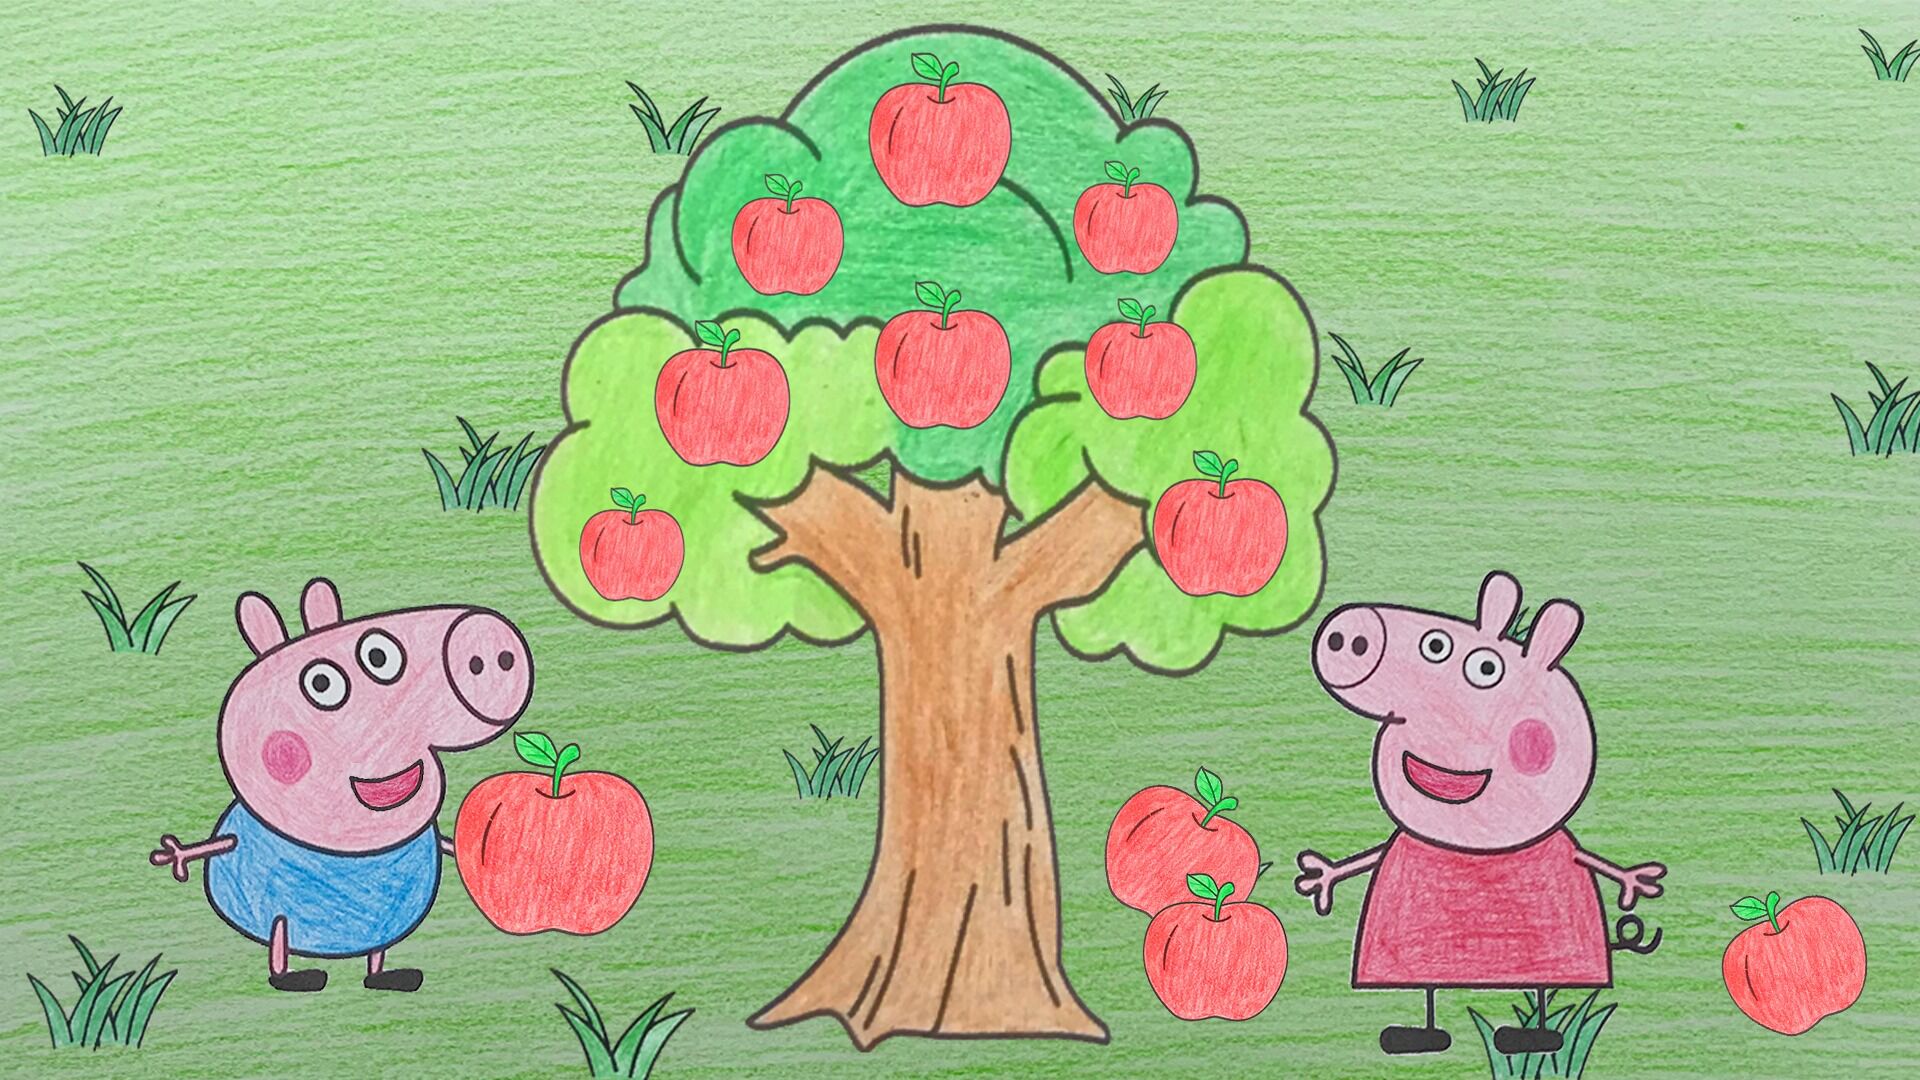 小猪佩奇苹果树图片